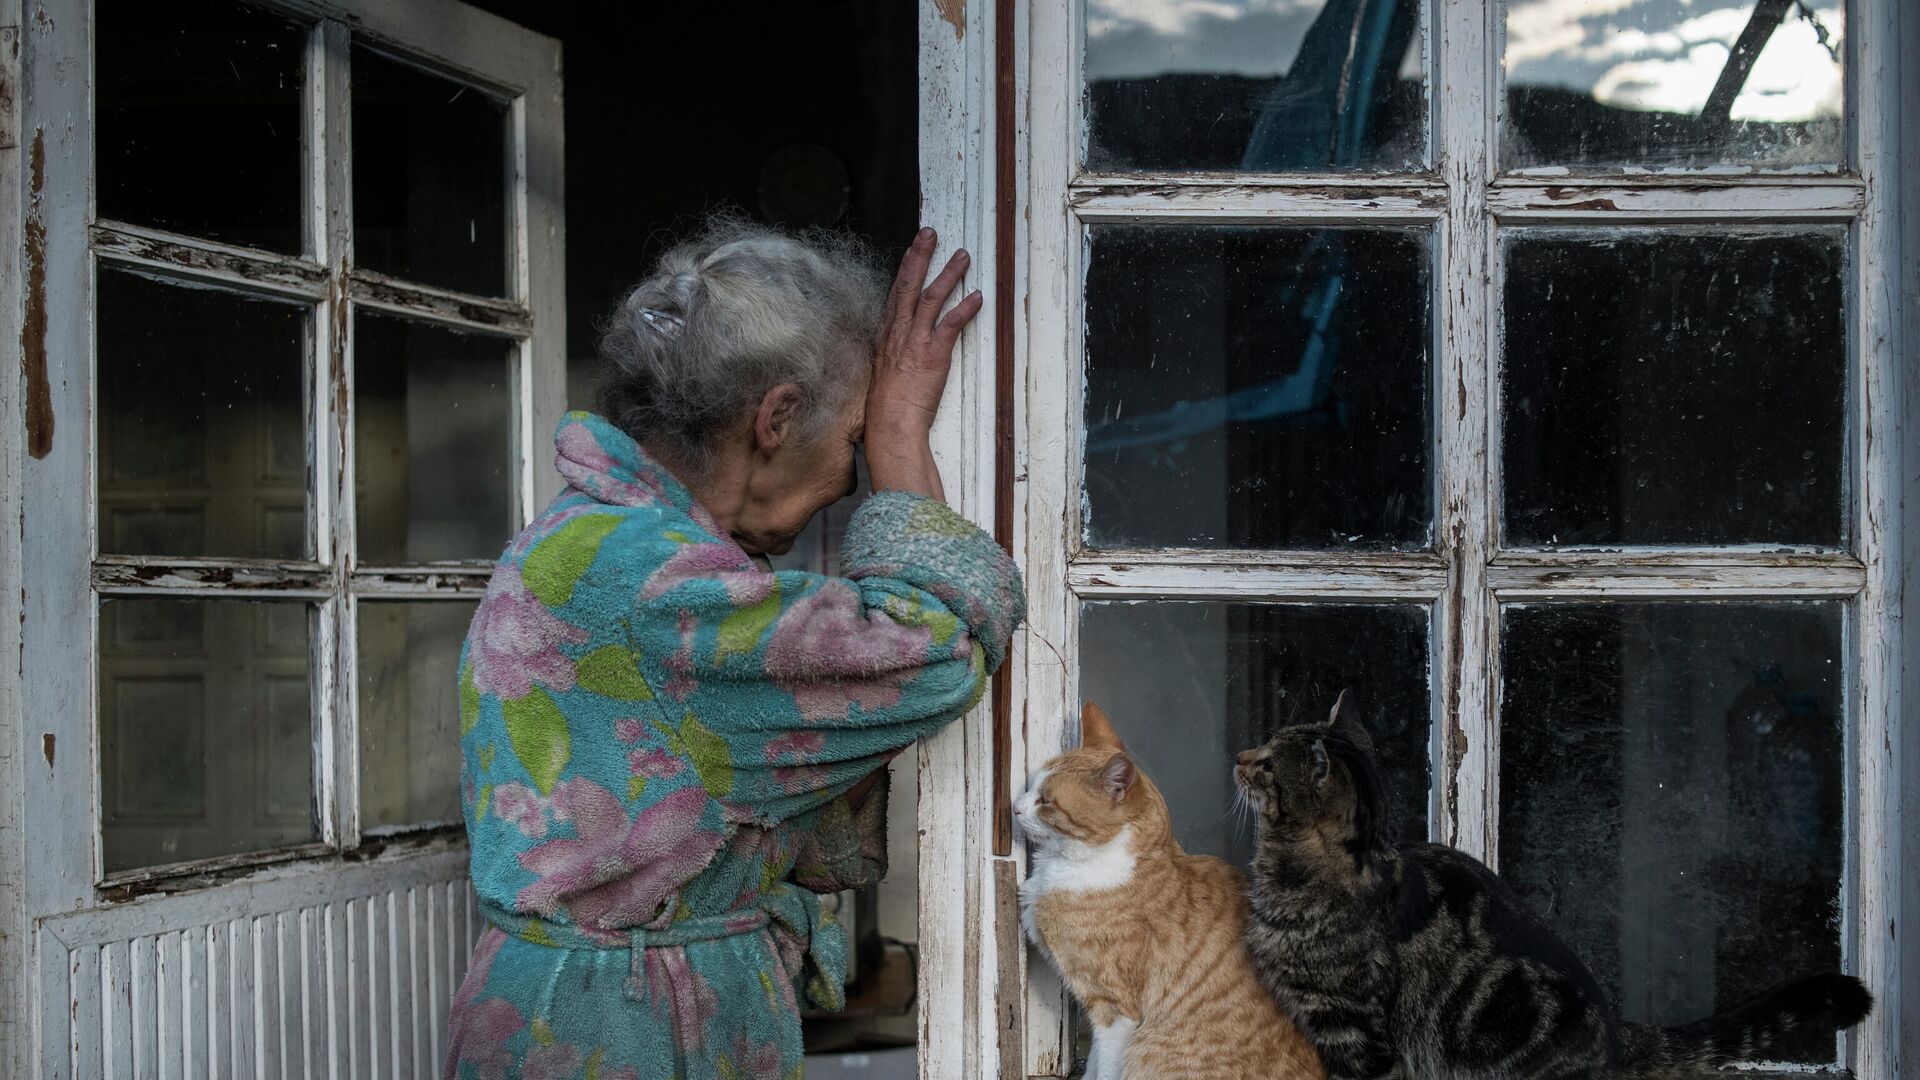 Абовян Асмик плачет в дверях своего дома в селе Неркин Сус, Нагорный Карабах - Sputnik Латвия, 1920, 15.11.2021